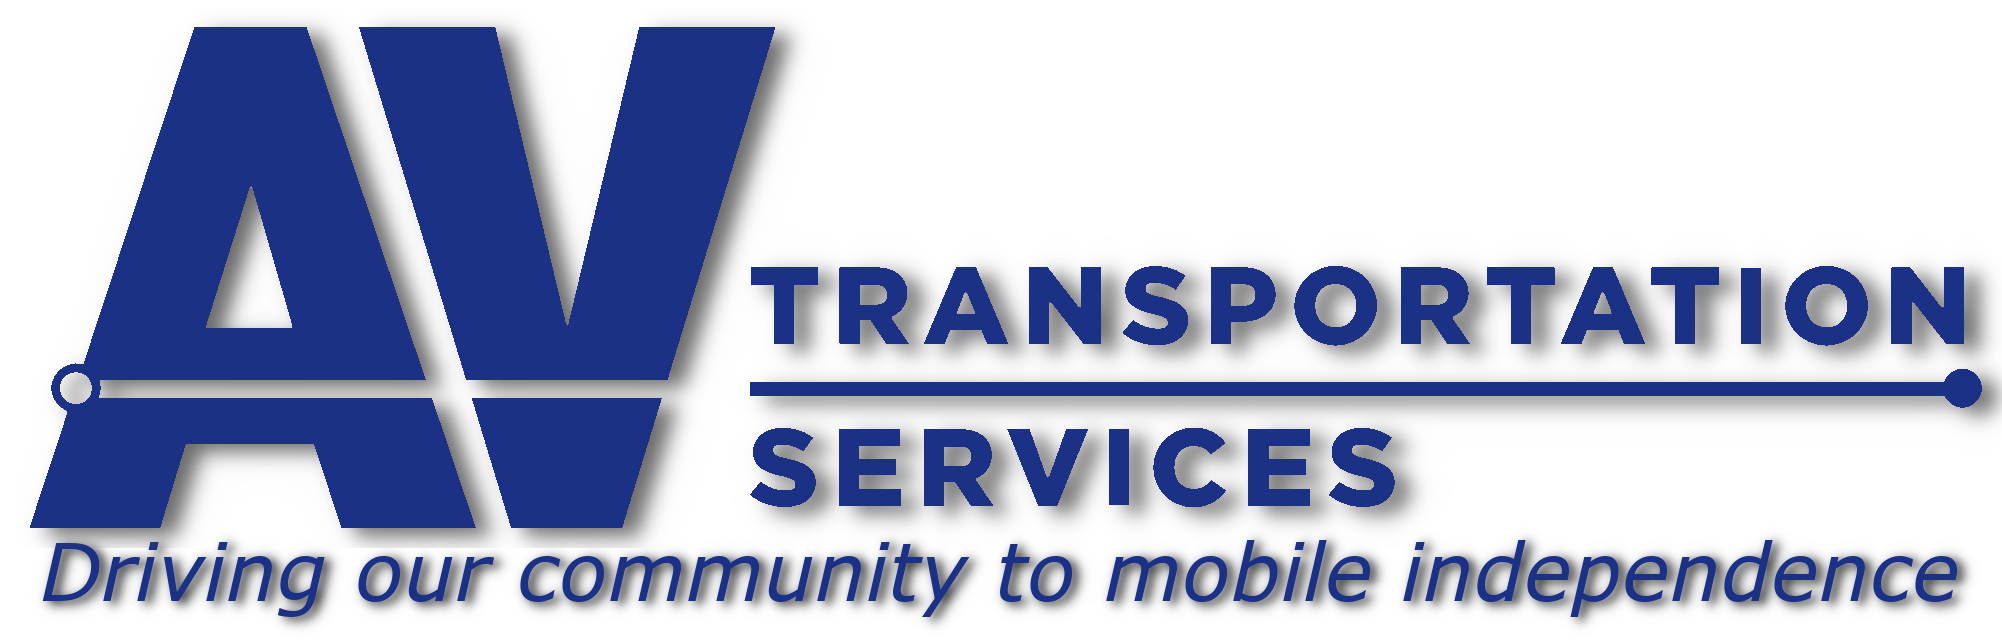 AV Transportation Services